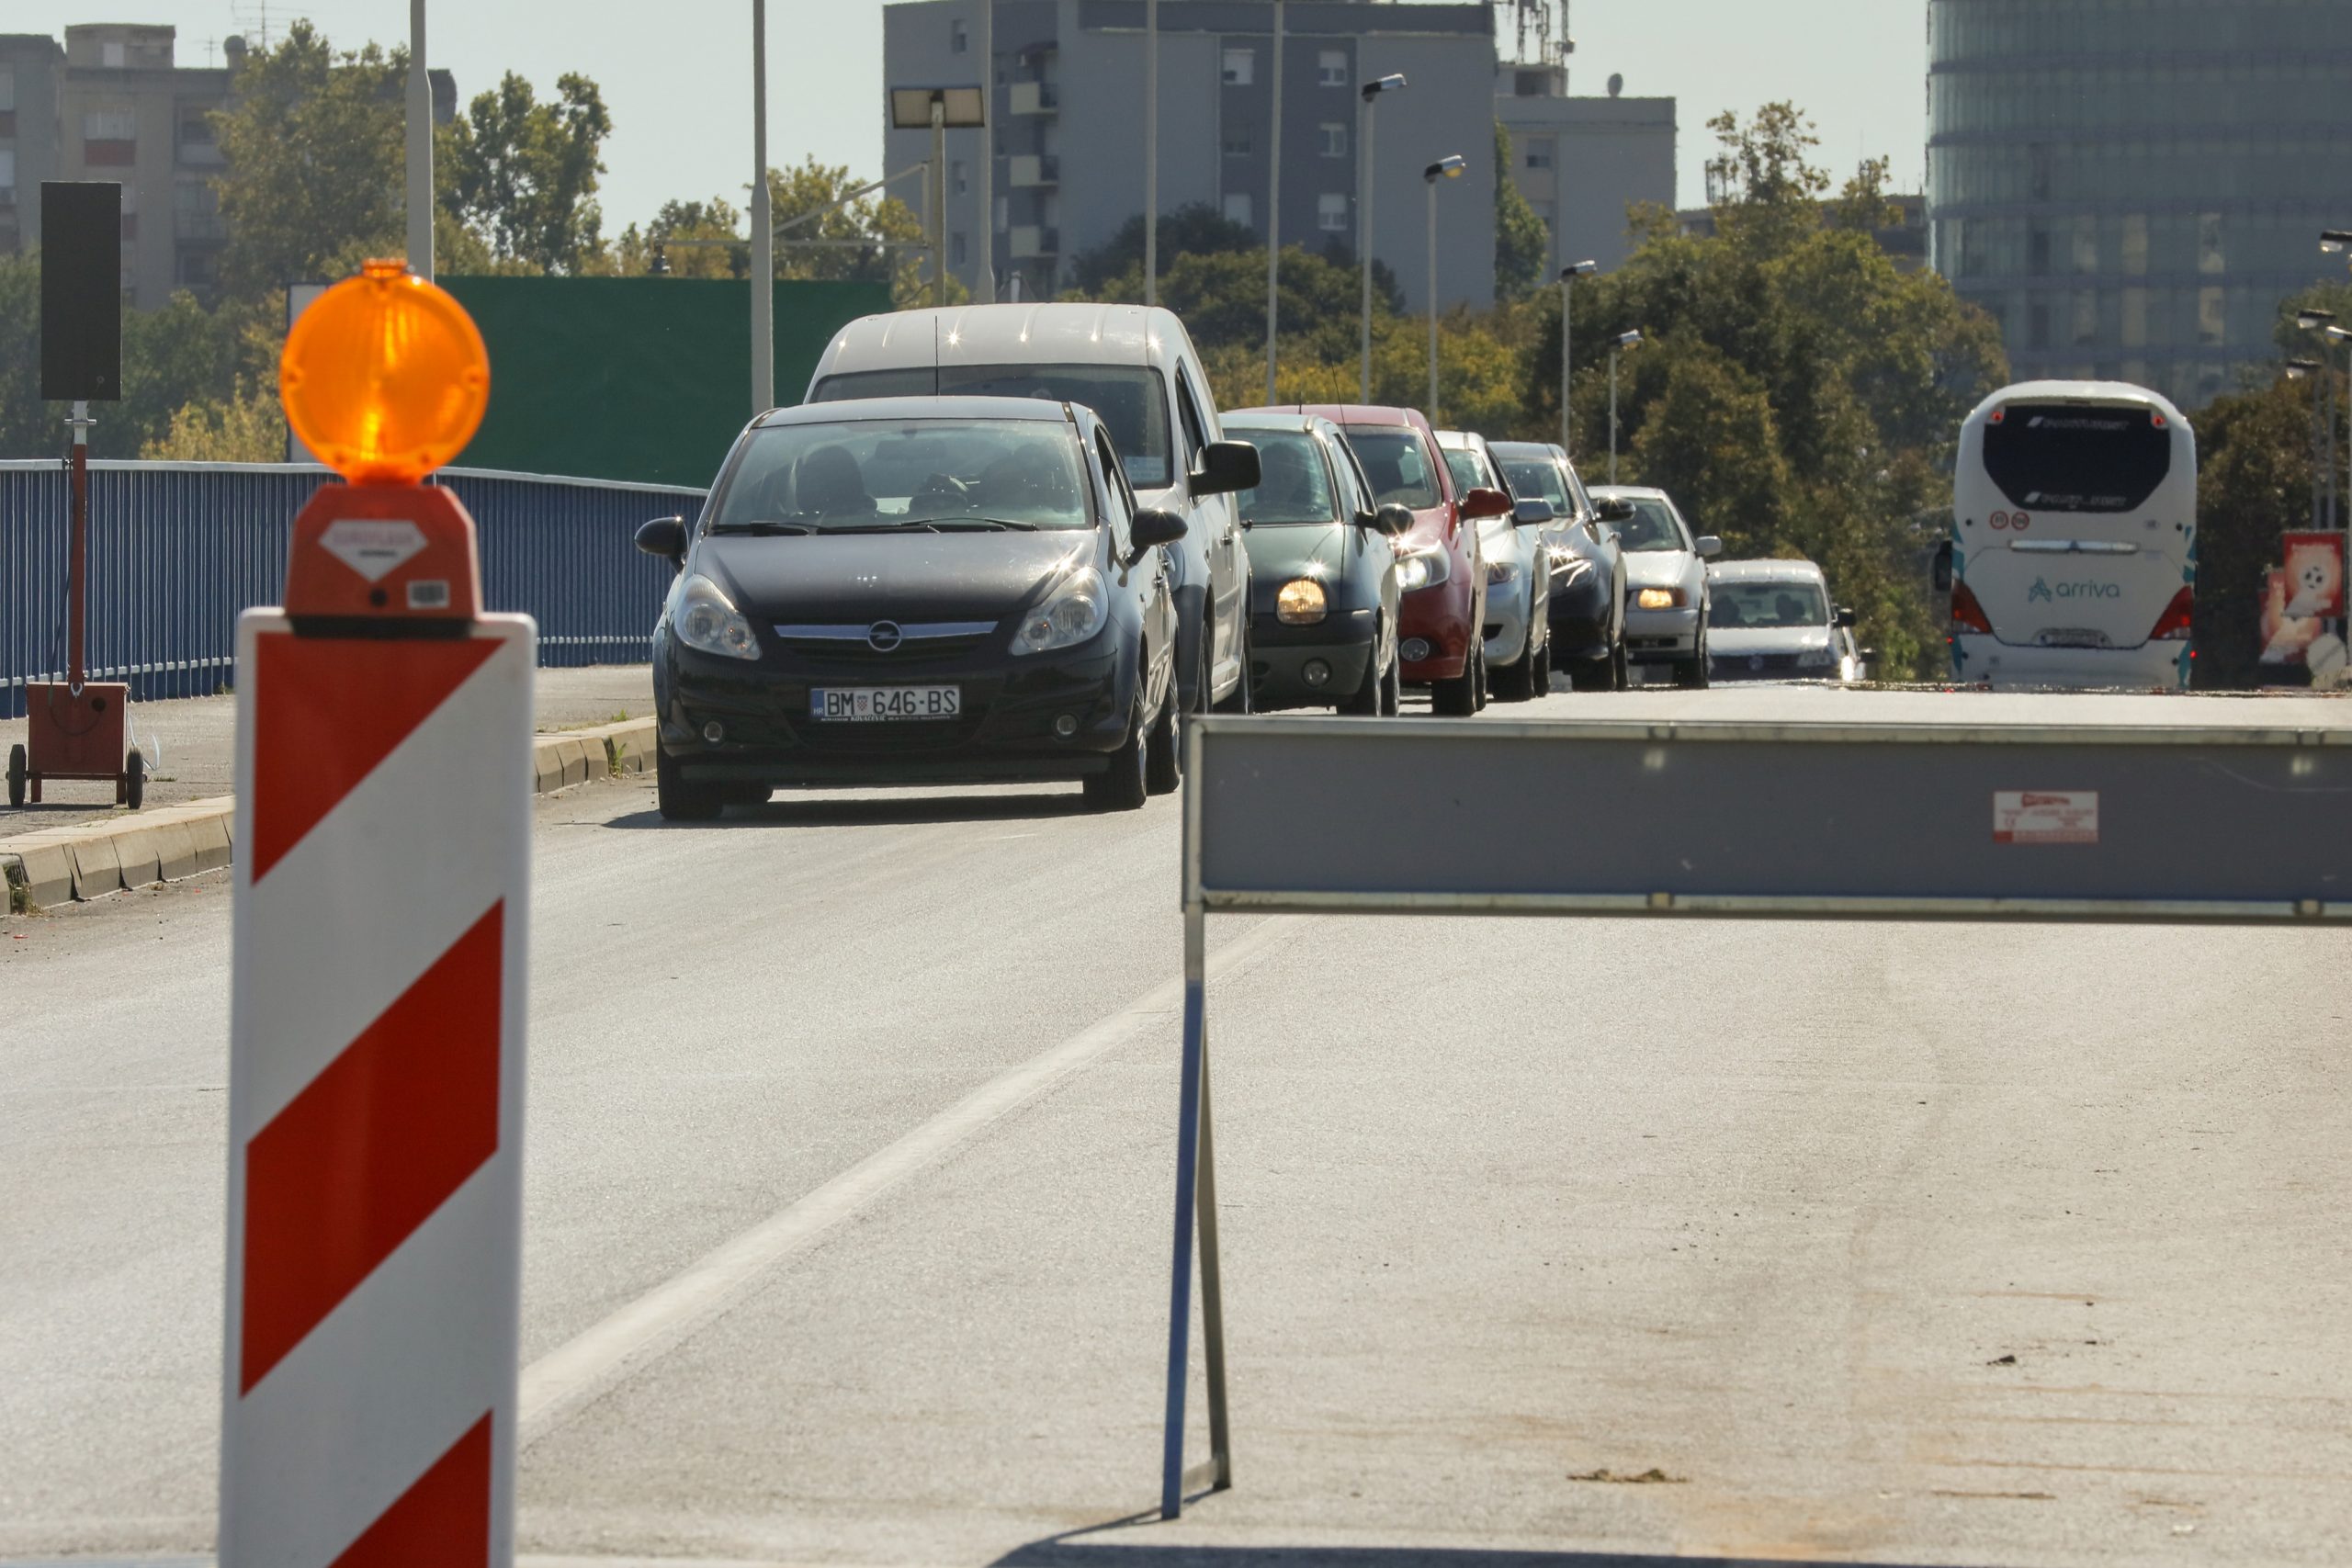 16.09.2019., Osijek - Vec gotovo dva tjedna traju guzve na mostu dr. Franje Tudjmana u Osijeku zbog radova zamjene prijelazne naprave sa sjeverne strane mosta. Postavljena je i privremena regulacija prometa ali prometne ''kvrcavice'' se dogadjaju svakodnevno.
Photo: Dubravka Petric/PIXSELL